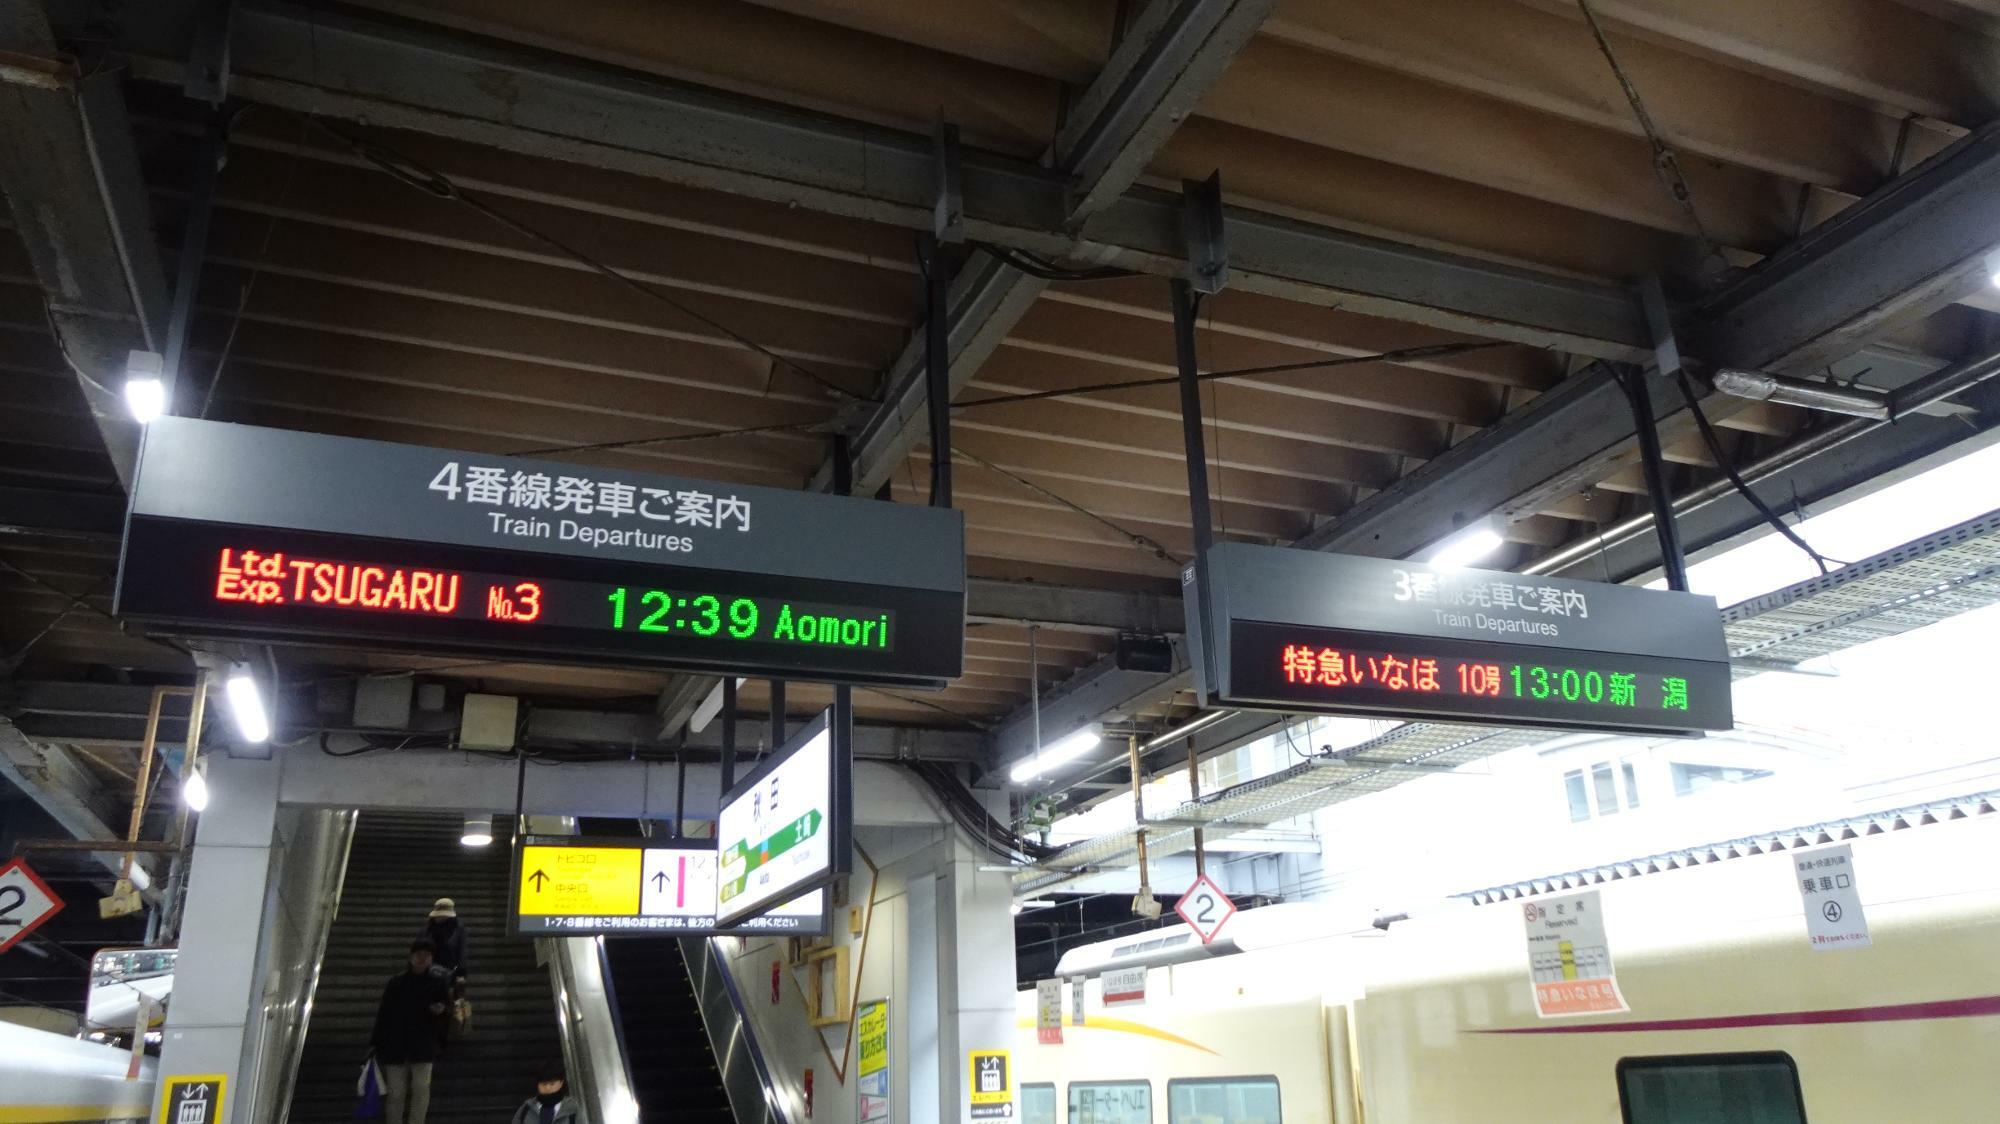 秋田駅の「つがる」と「いなほ」の発着ホーム（今回のプランの時刻とは違います）